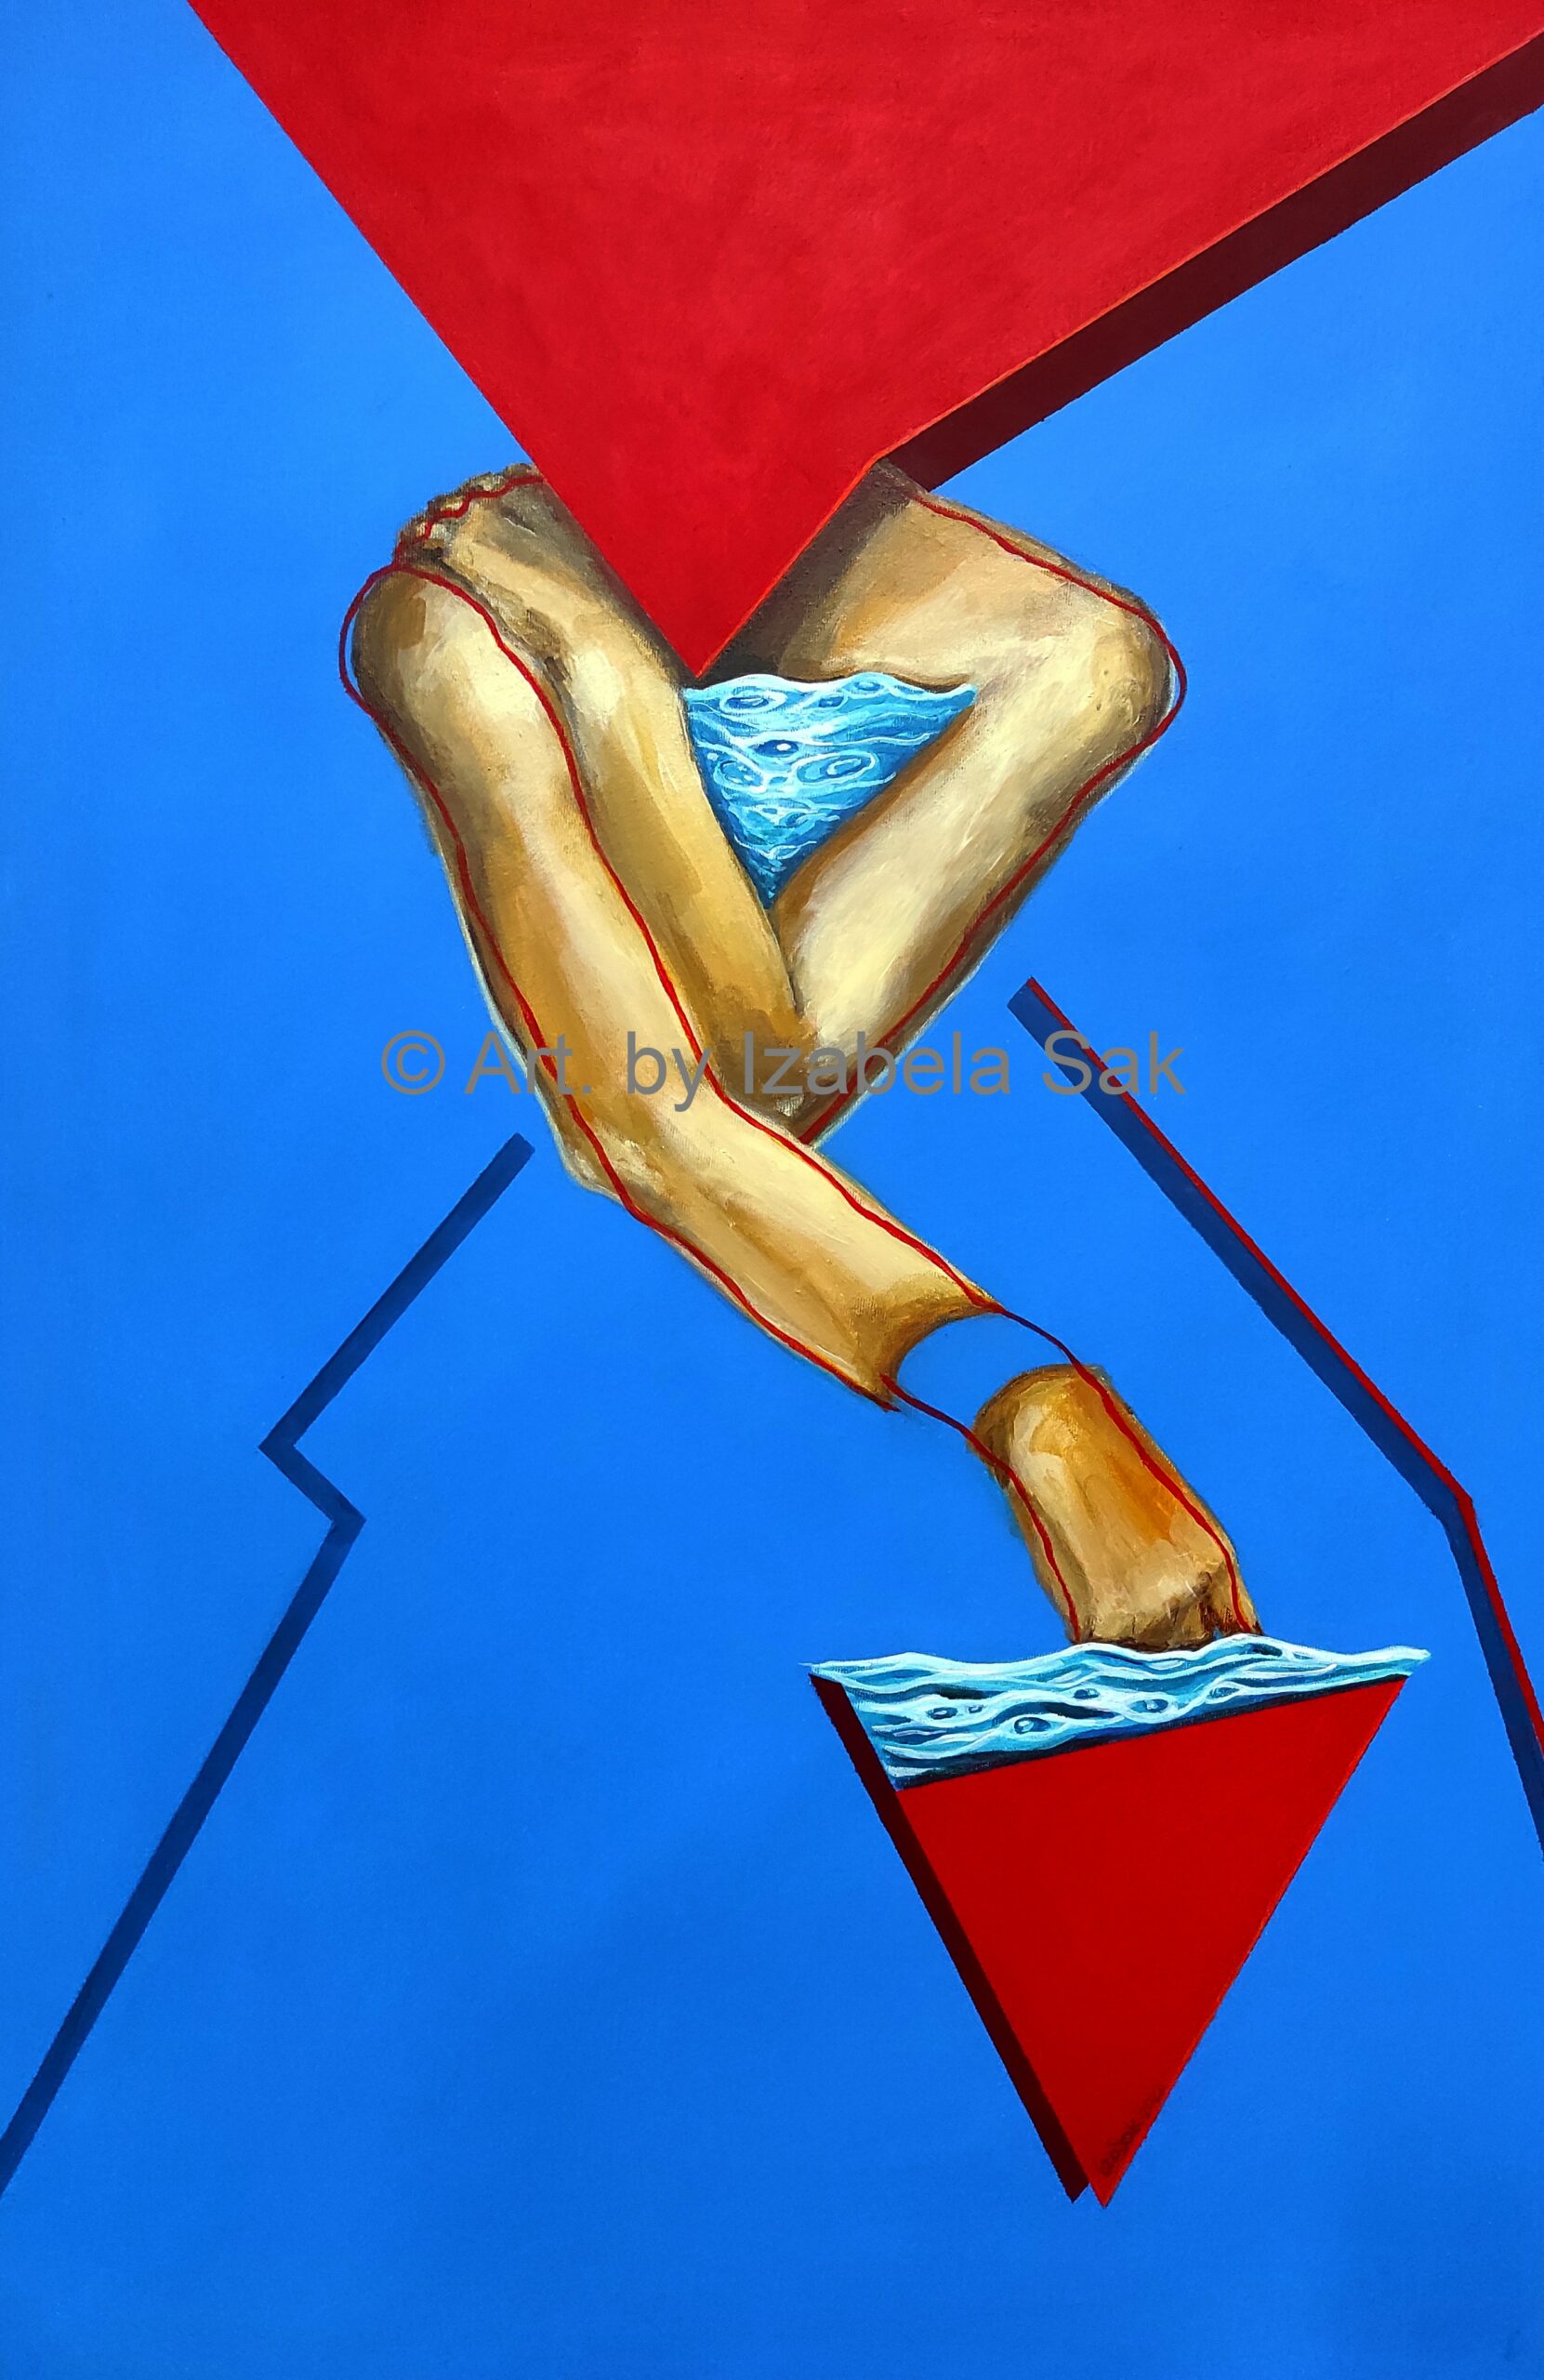 Obraz akrylowy na płótnie. Izabela Sak. Tytuł: CALYPSO Rok 2022 90cm x 60cm